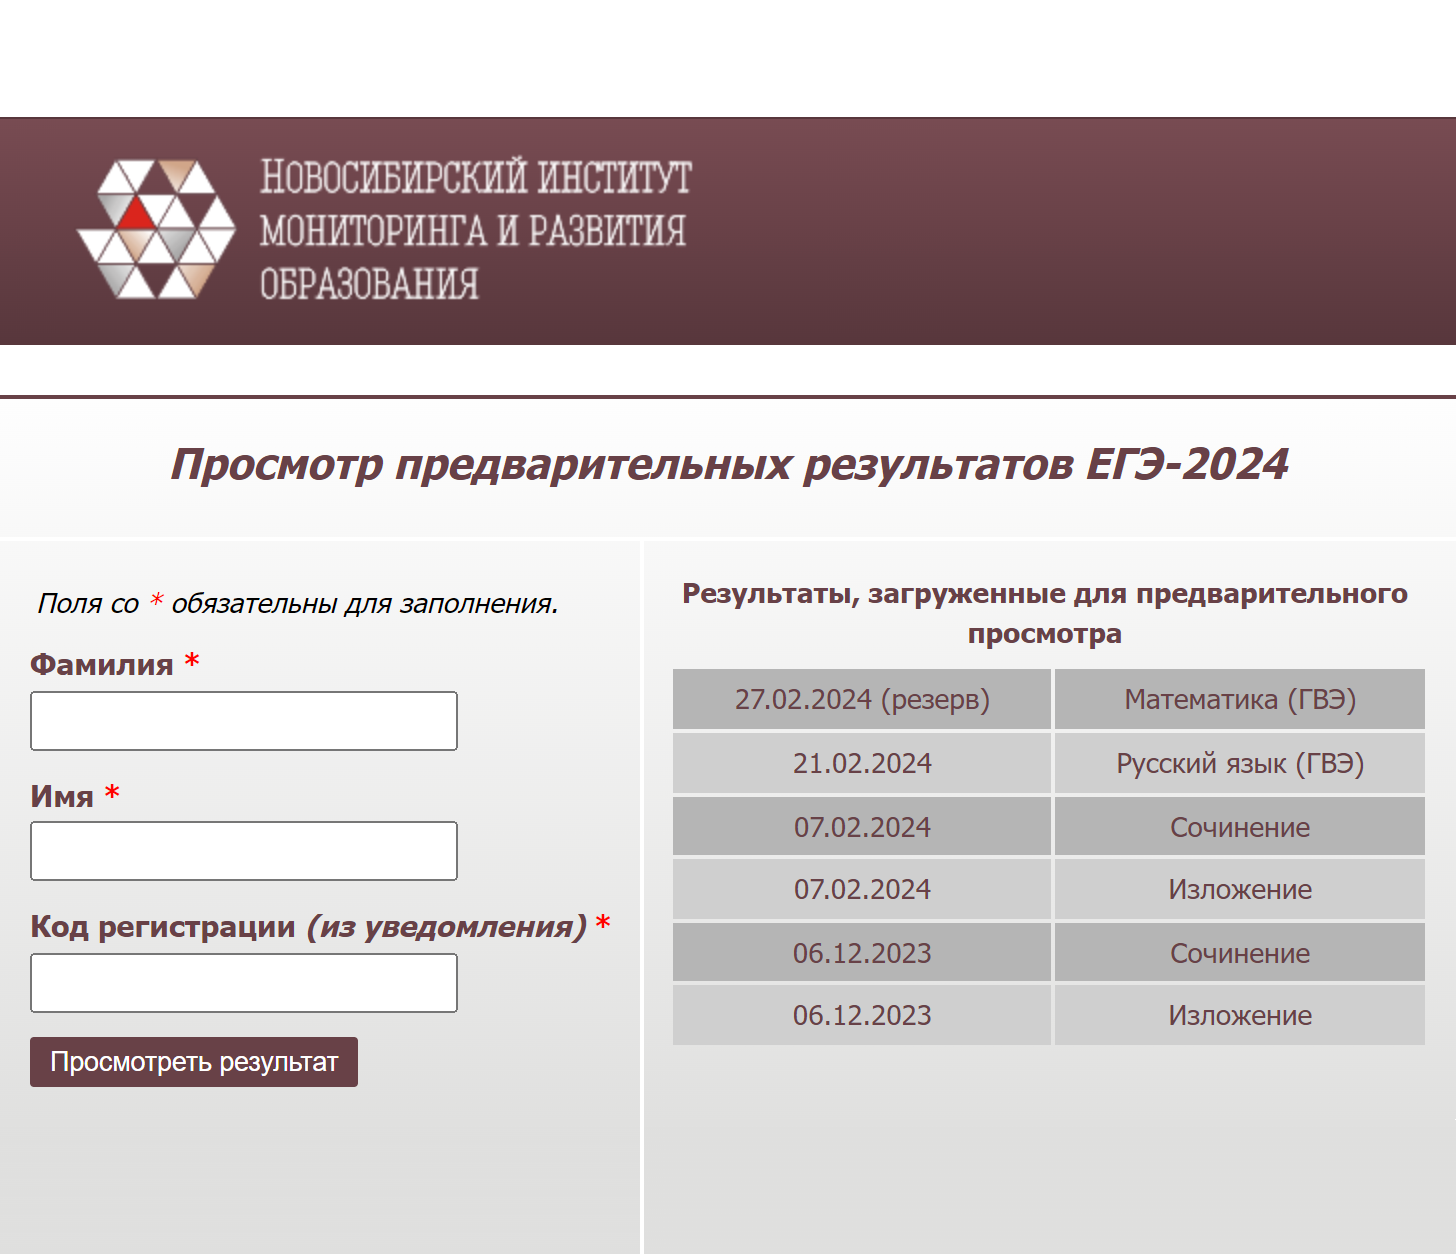 Жители Новосибирска могут проверить результаты ЕГЭ на сайте Новосибирского института мониторинга и развития образования. Источник: nscm.ru/egeresult